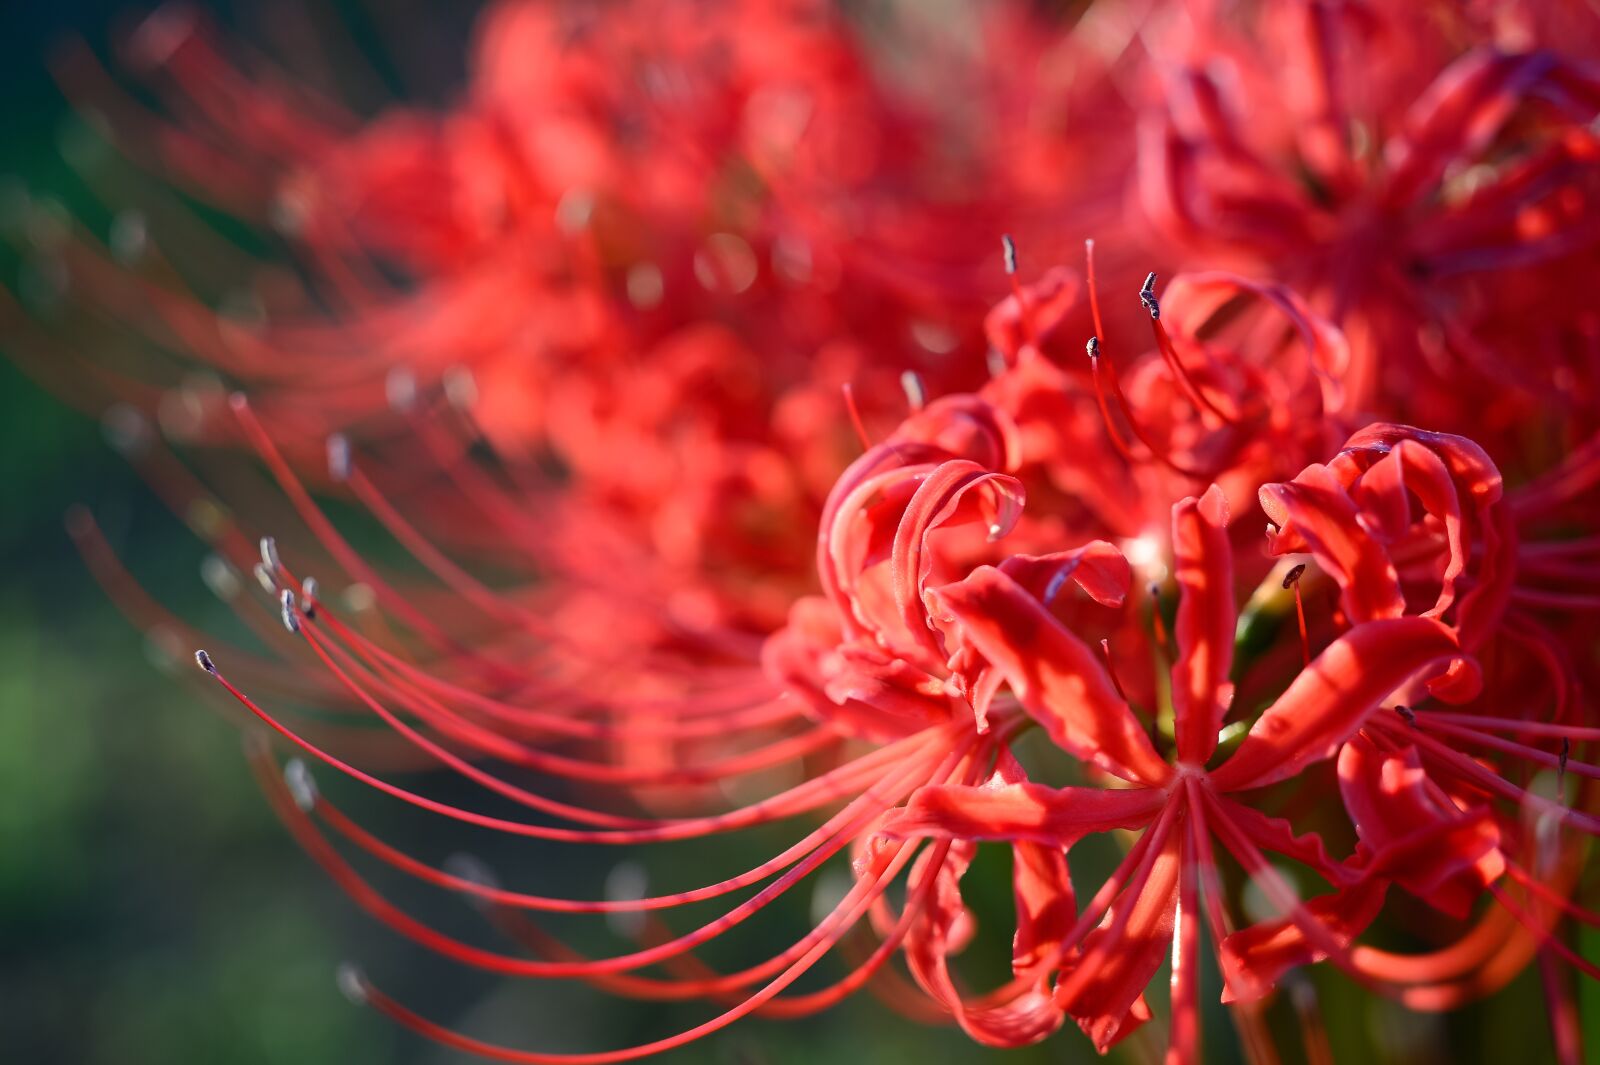 Nikon Df sample photo. Garden, flower, red spider photography